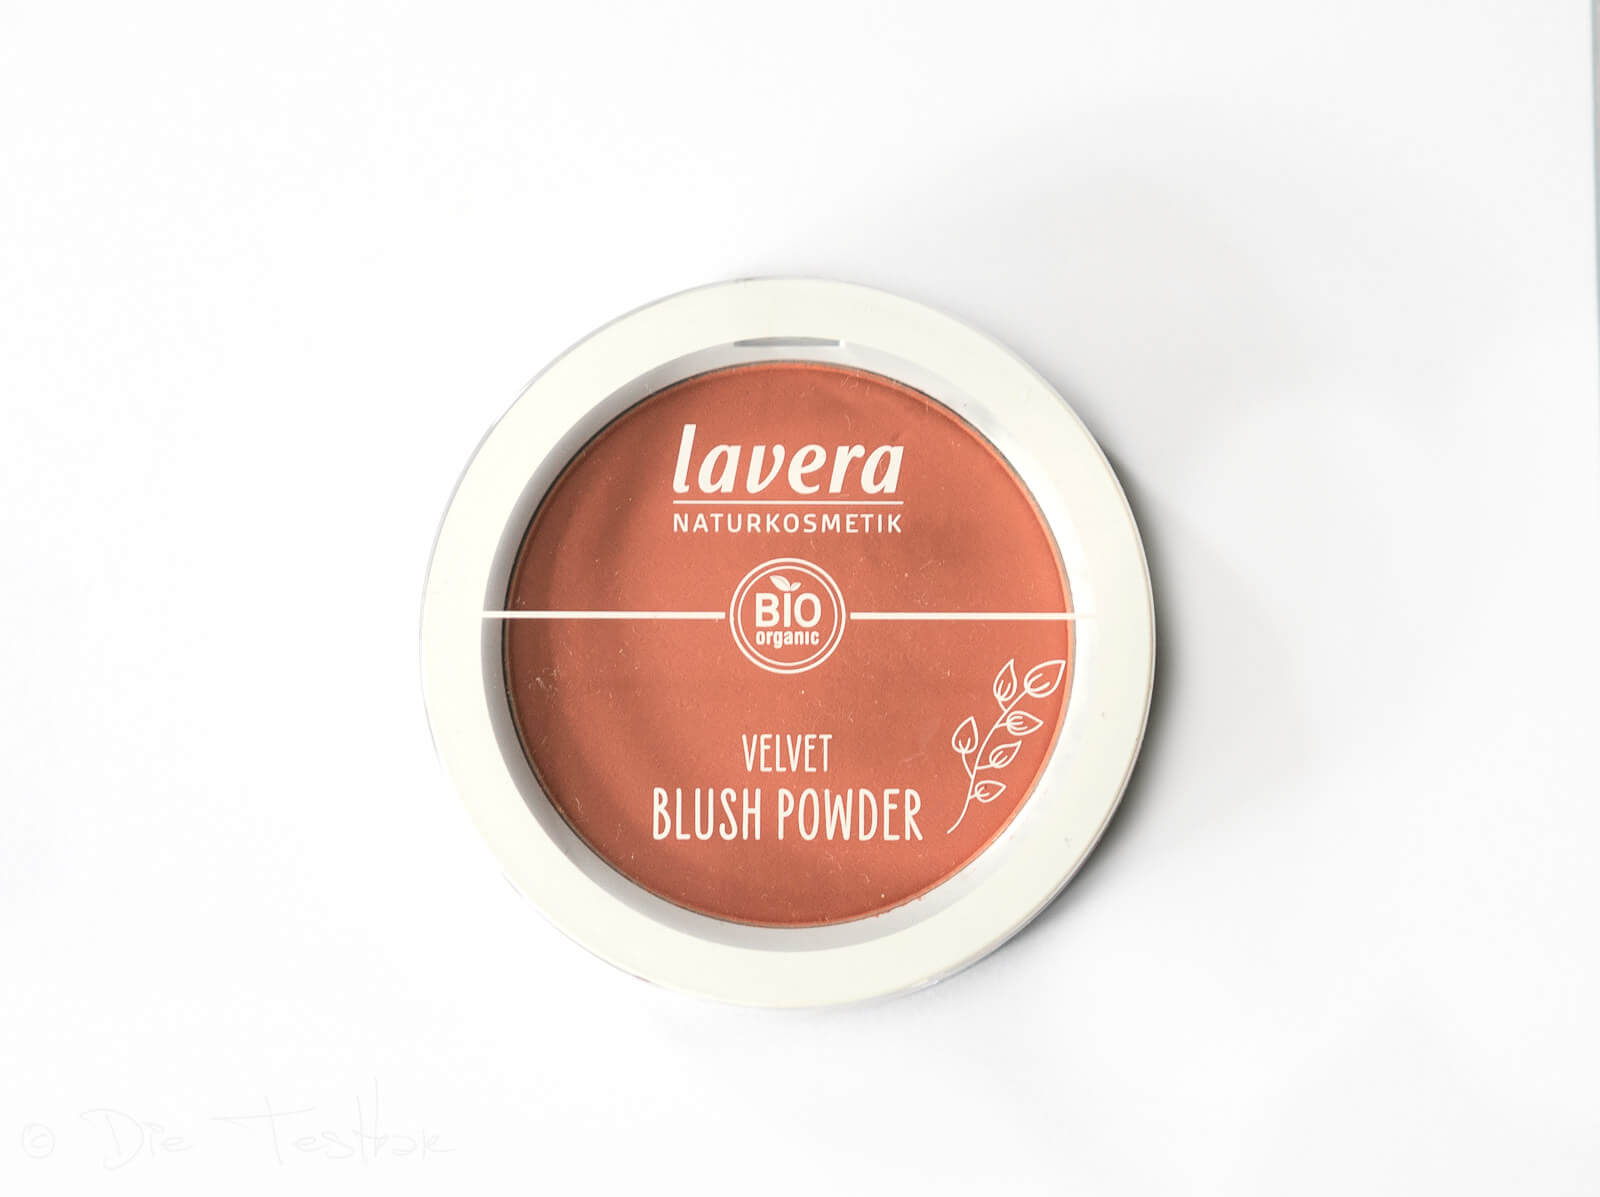 lavera - Dekorative Kosmetik - Neu im Sortiment - Bronzer, Rouge, Grundierung und Eyeshadows 26